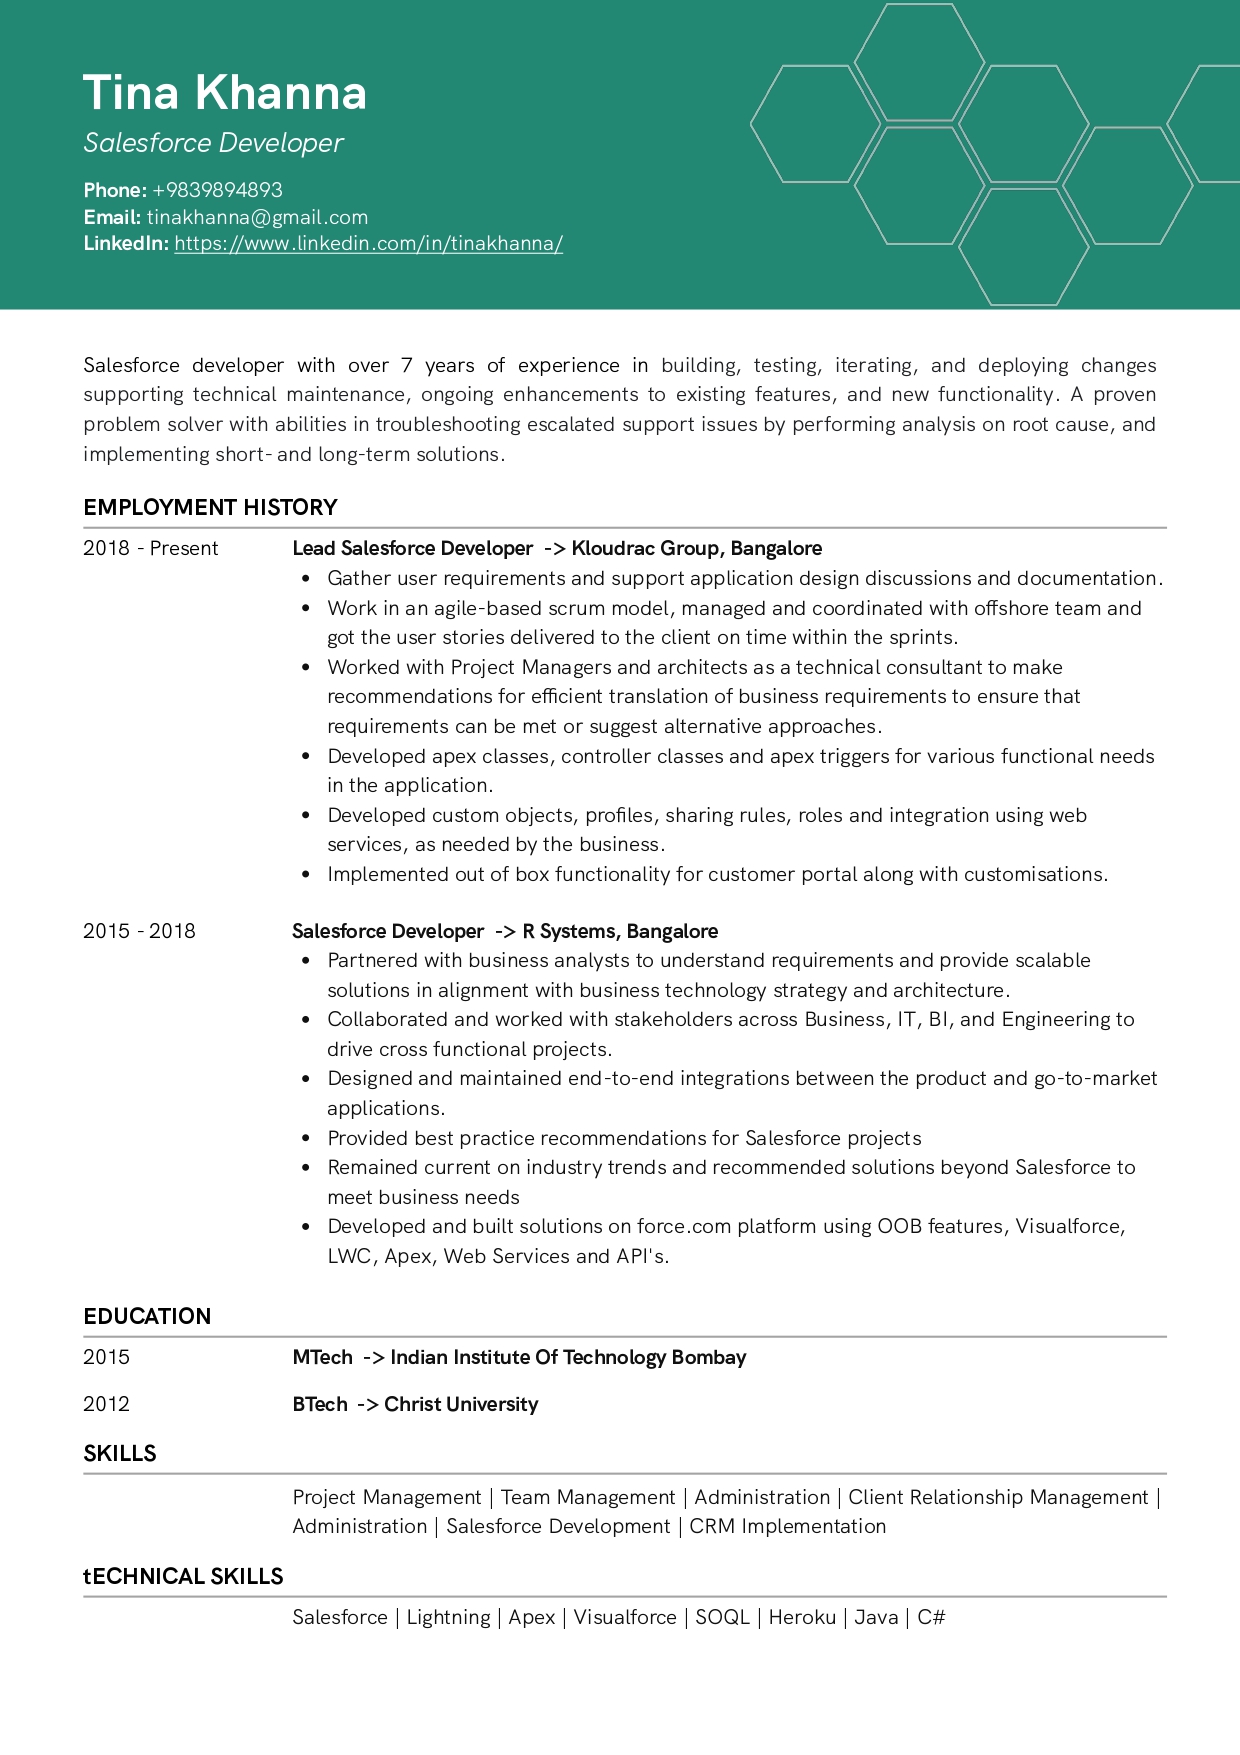 Resume of Salesforce Developer